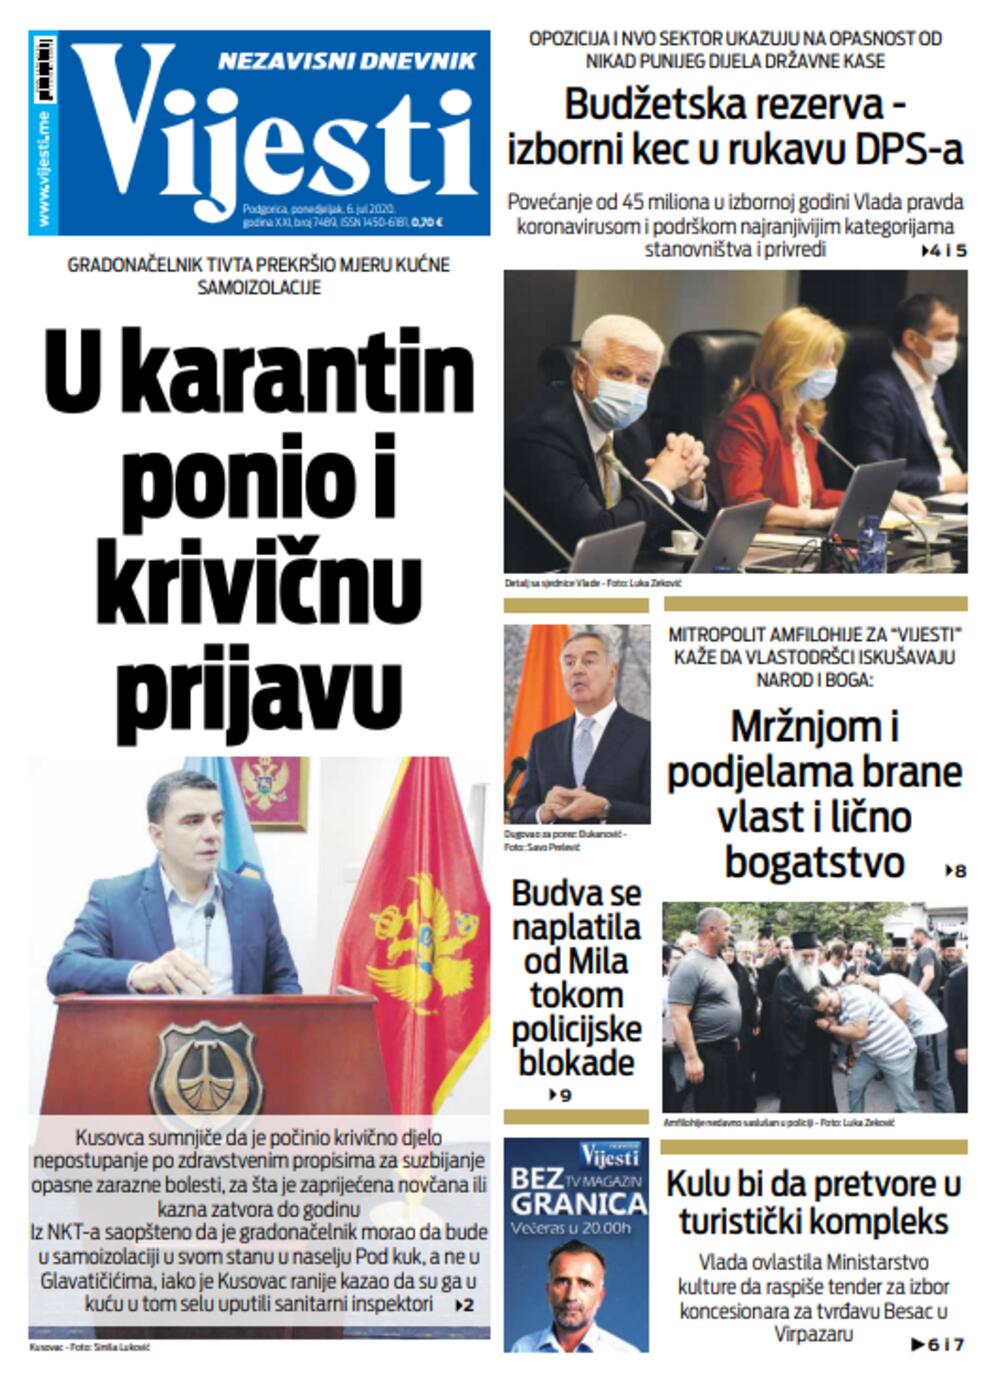 Naslovna strana "Vijesti" za šesti jul 2020., Foto: Vijesti